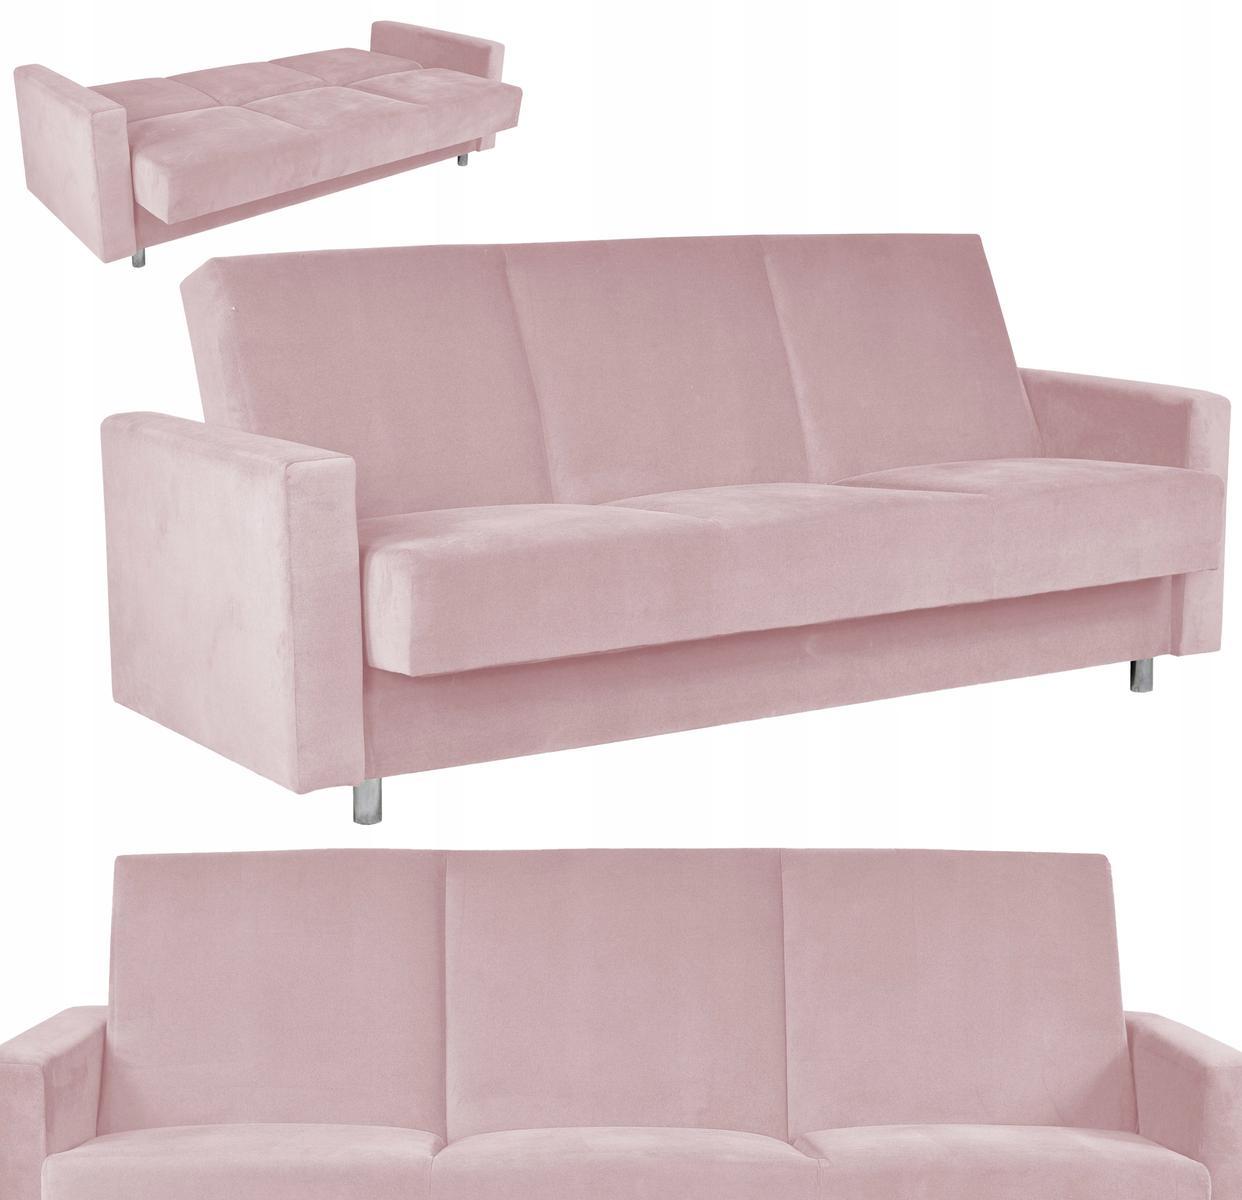 Wersalka ALICJA 212x100 cm różowa rozkładana kanapa z pojemnikiem na pościel sofa tapczan do salonu 0 Full Screen